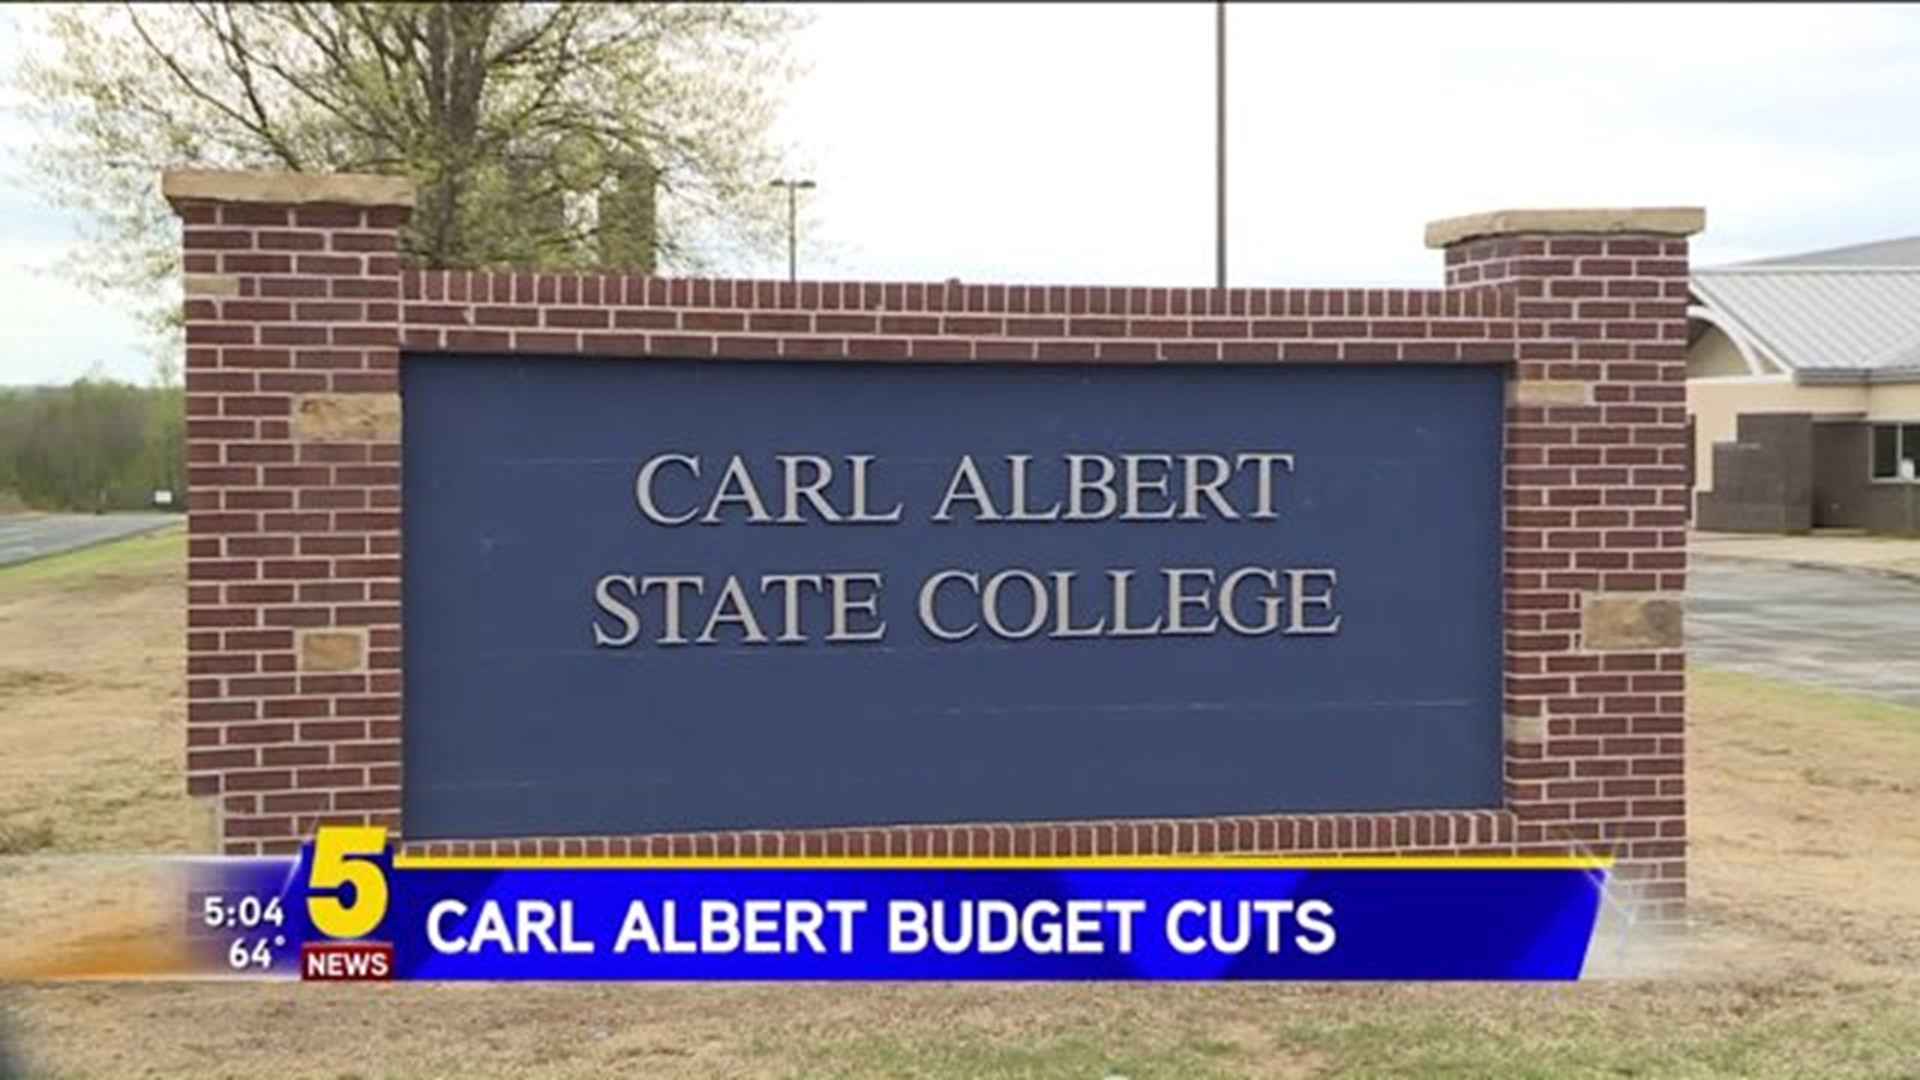 Carl Albert Budget Cuts